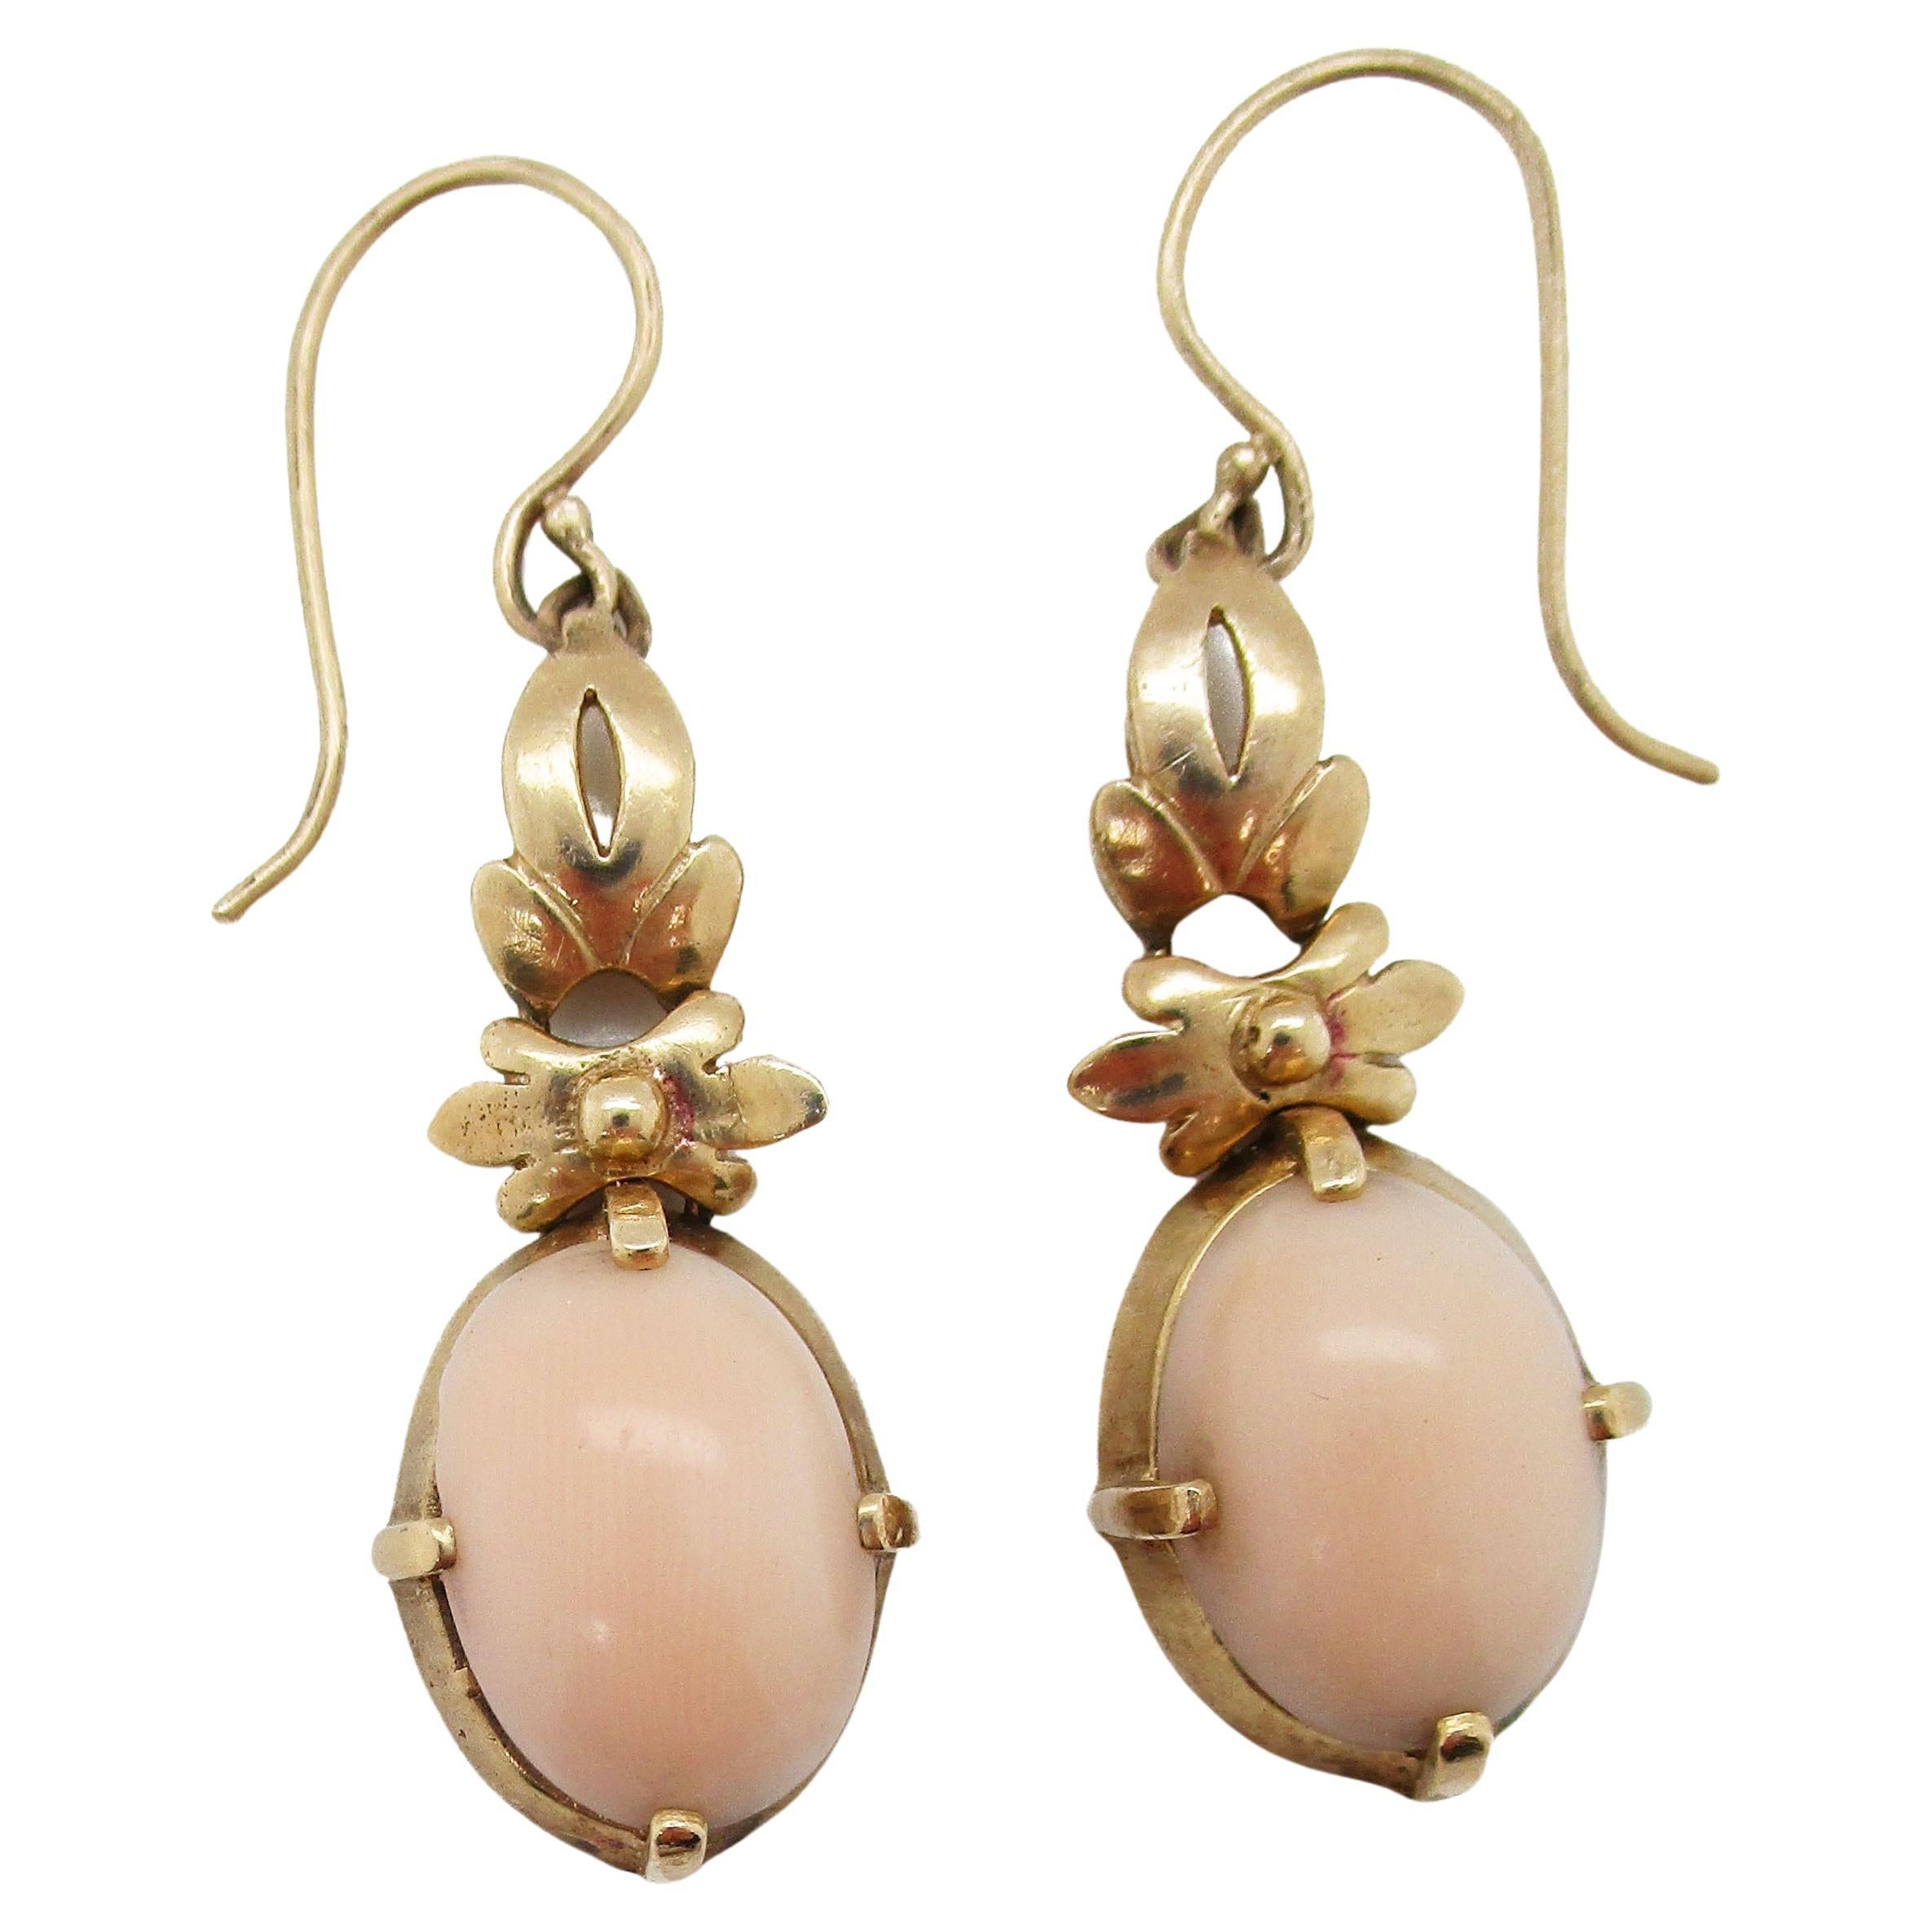 Coral Earrings Jewellery Earrings Chandelier Earrings Coral Jewelry Angel Skin Coral Earrings Pink Coral Earrings 14K gold filled Gold Coral Earrings Chandelier Earrings 